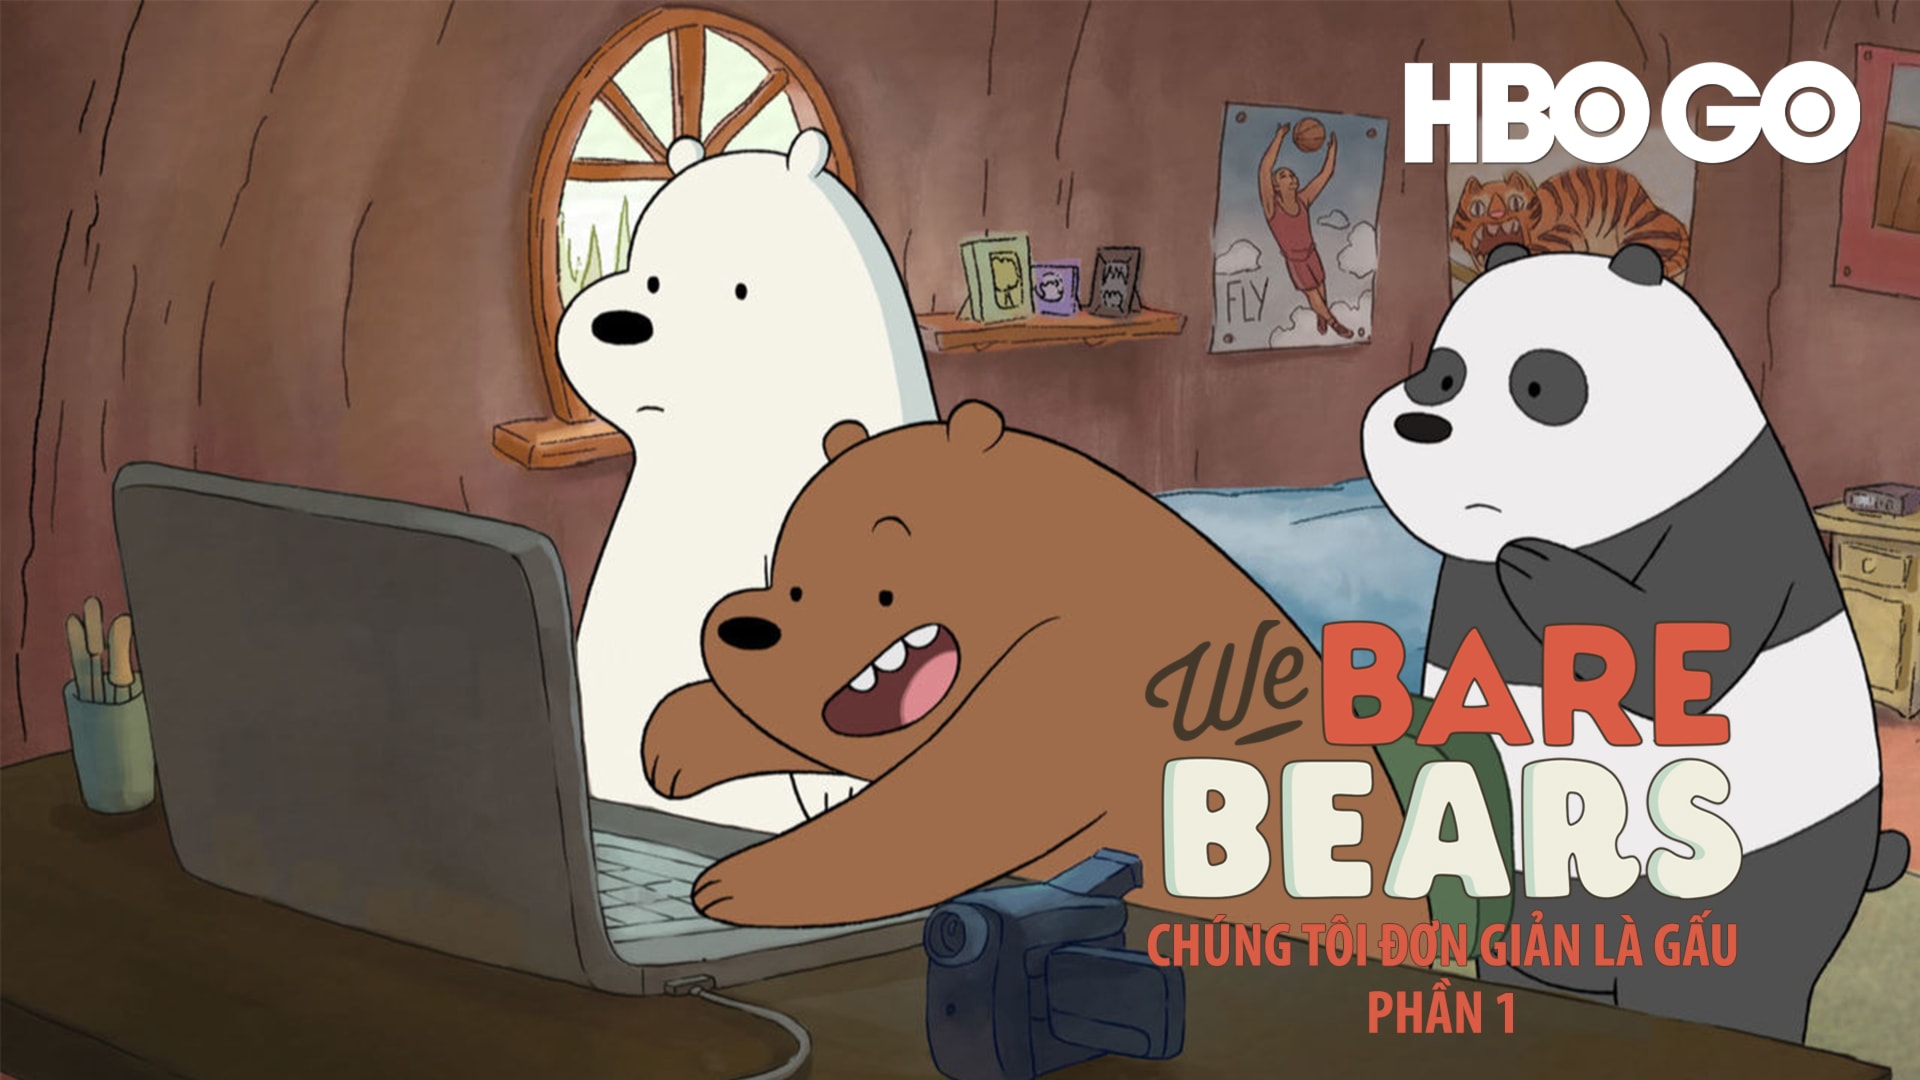 Chúng tôi đơn giản là gấu, VieON là một bộ phim hoạt hình nổi tiếng với những chú gấu đáng yêu và những câu chuyện vui nhộn. Với nét vẽ độc đáo và bắt mắt, bộ phim sẽ thu hút mọi lứa tuổi. Hãy xem ngay để tận hưởng những giây phút giải trí tuyệt vời.